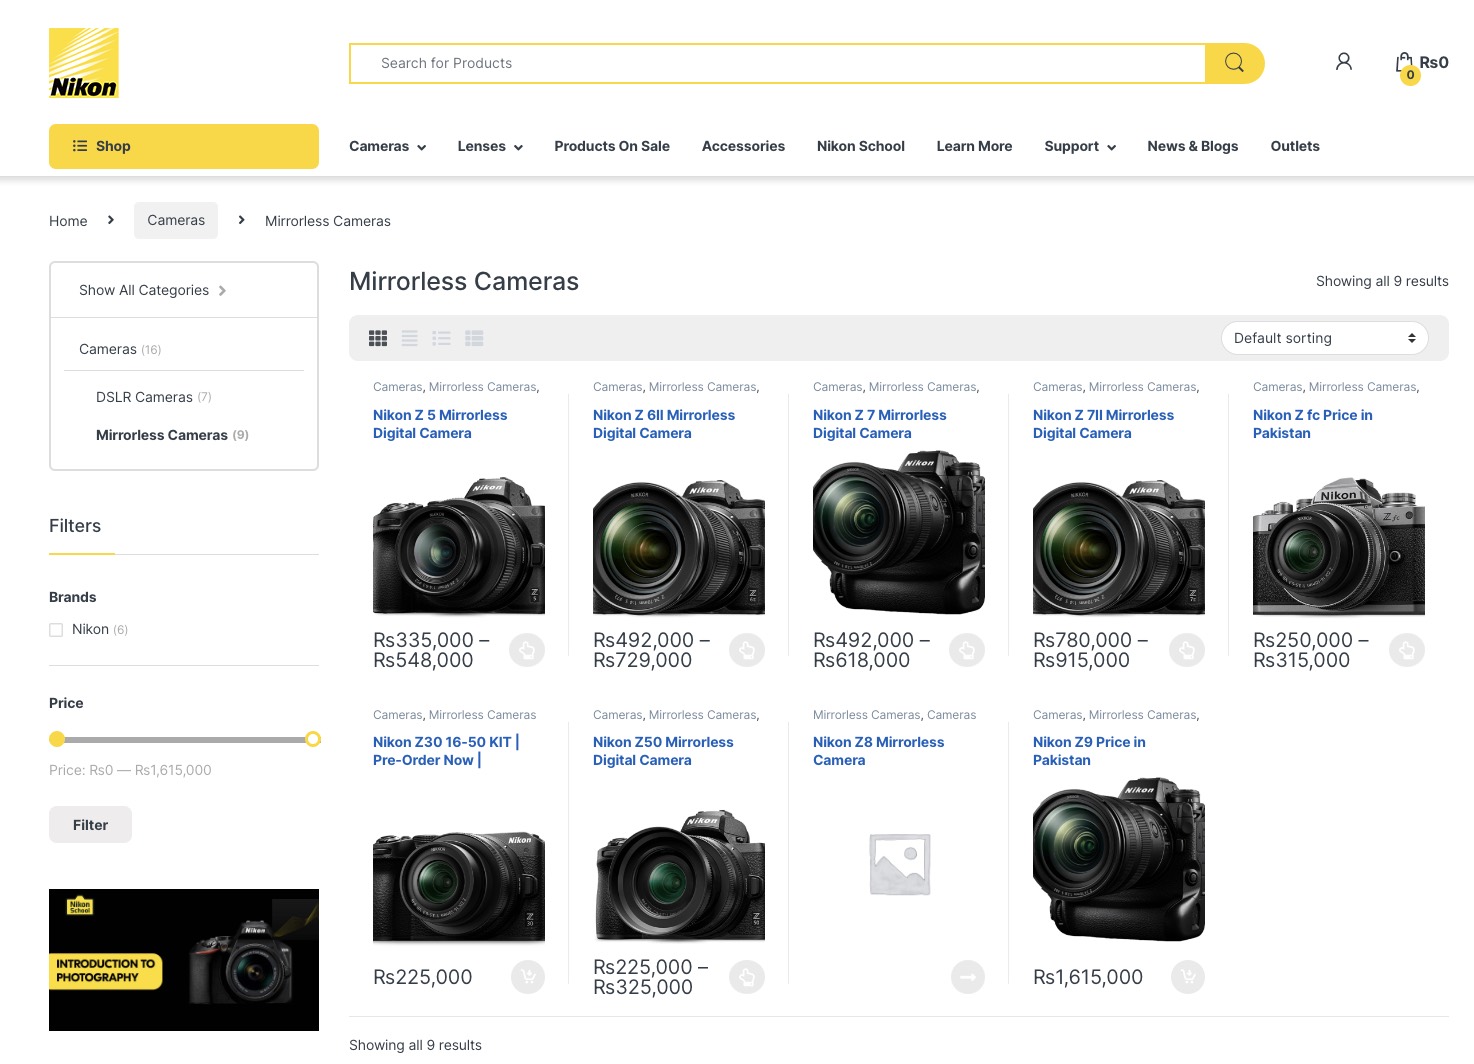 Nikon-Z8-camera-leaked-online1.jpg